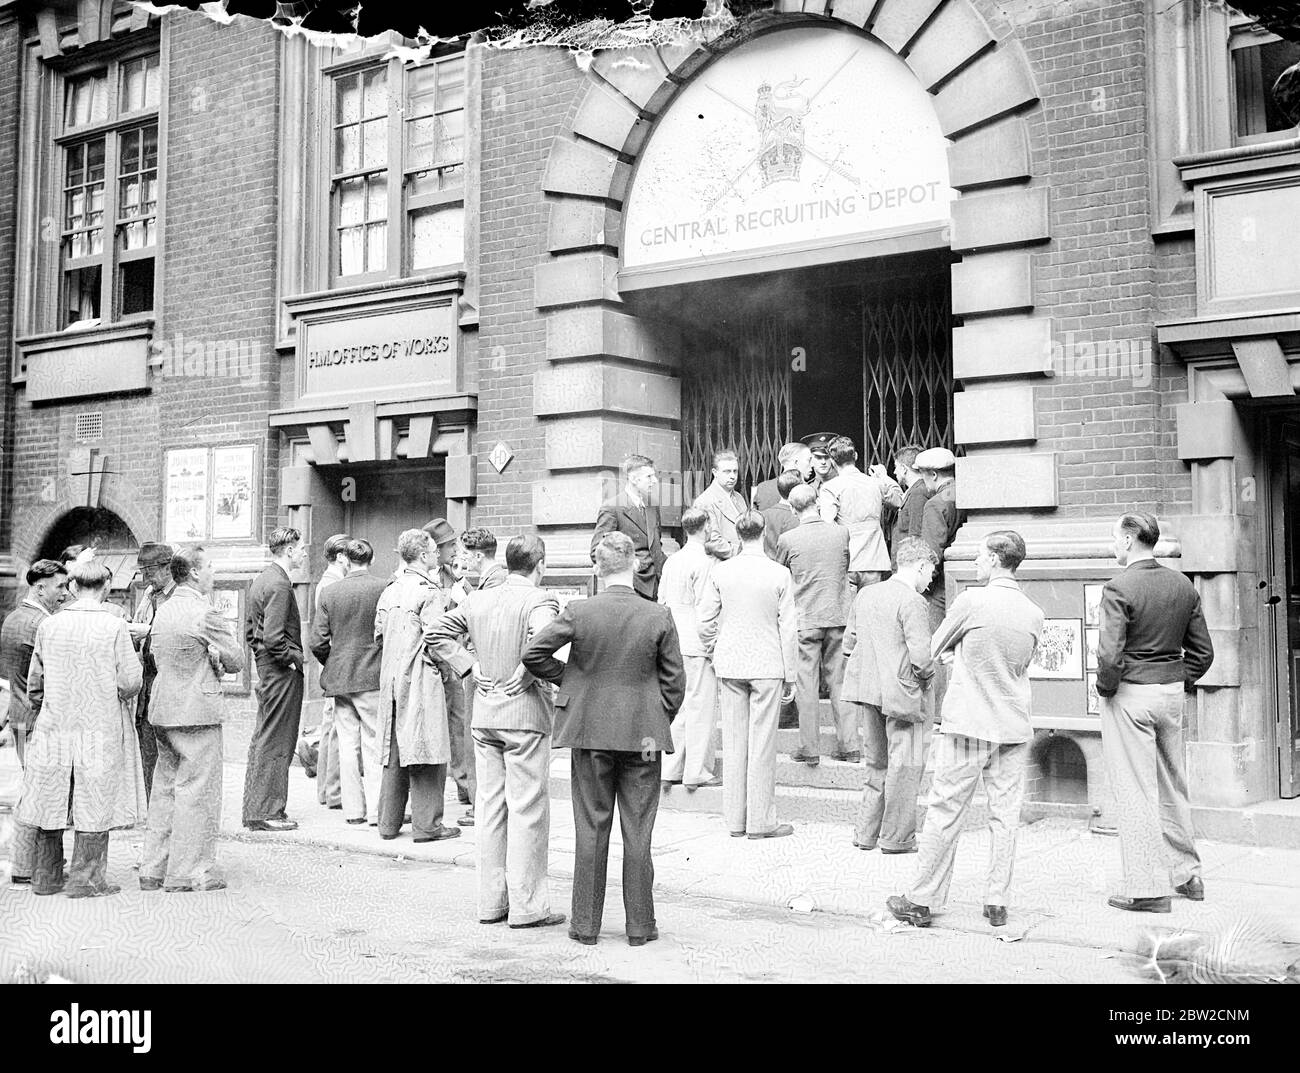 Männer eilen, um der Armee beizutreten. Würde Armee Rekruten am zentralen Recruiting Depot in New Scotland Yard heute (Samstag). Den Männern wurde gesagt, dass die Armee gegenwärtig alle Männer hat, die sie braucht, und diejenigen, die sich anschließen wollen, sollten warten, um gerufen zu werden. September 1939 Stockfoto